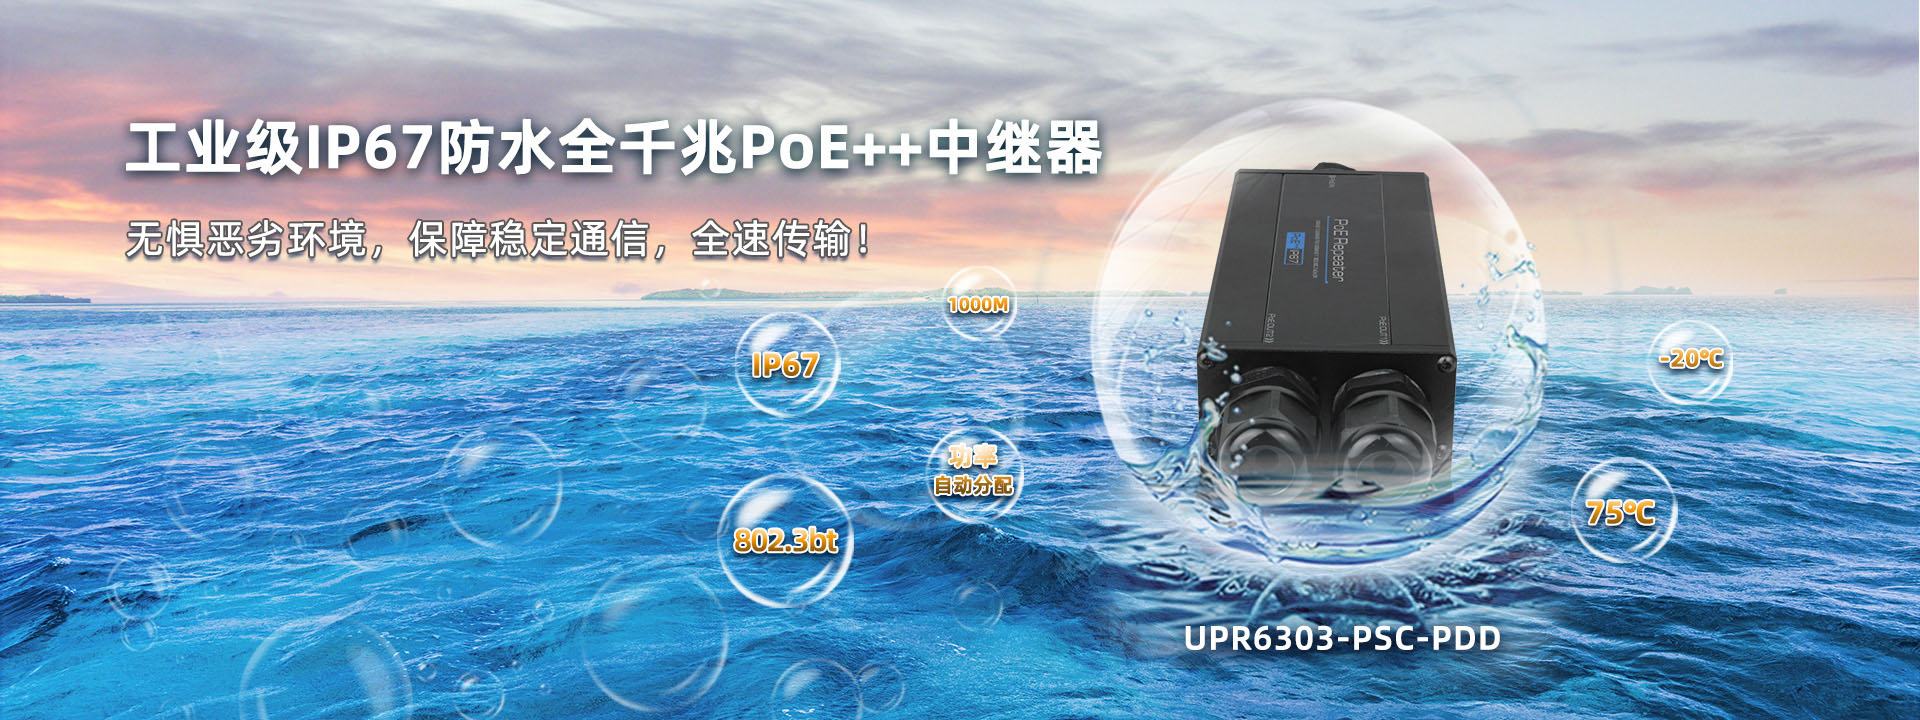 UPR6303-PSC-PDD